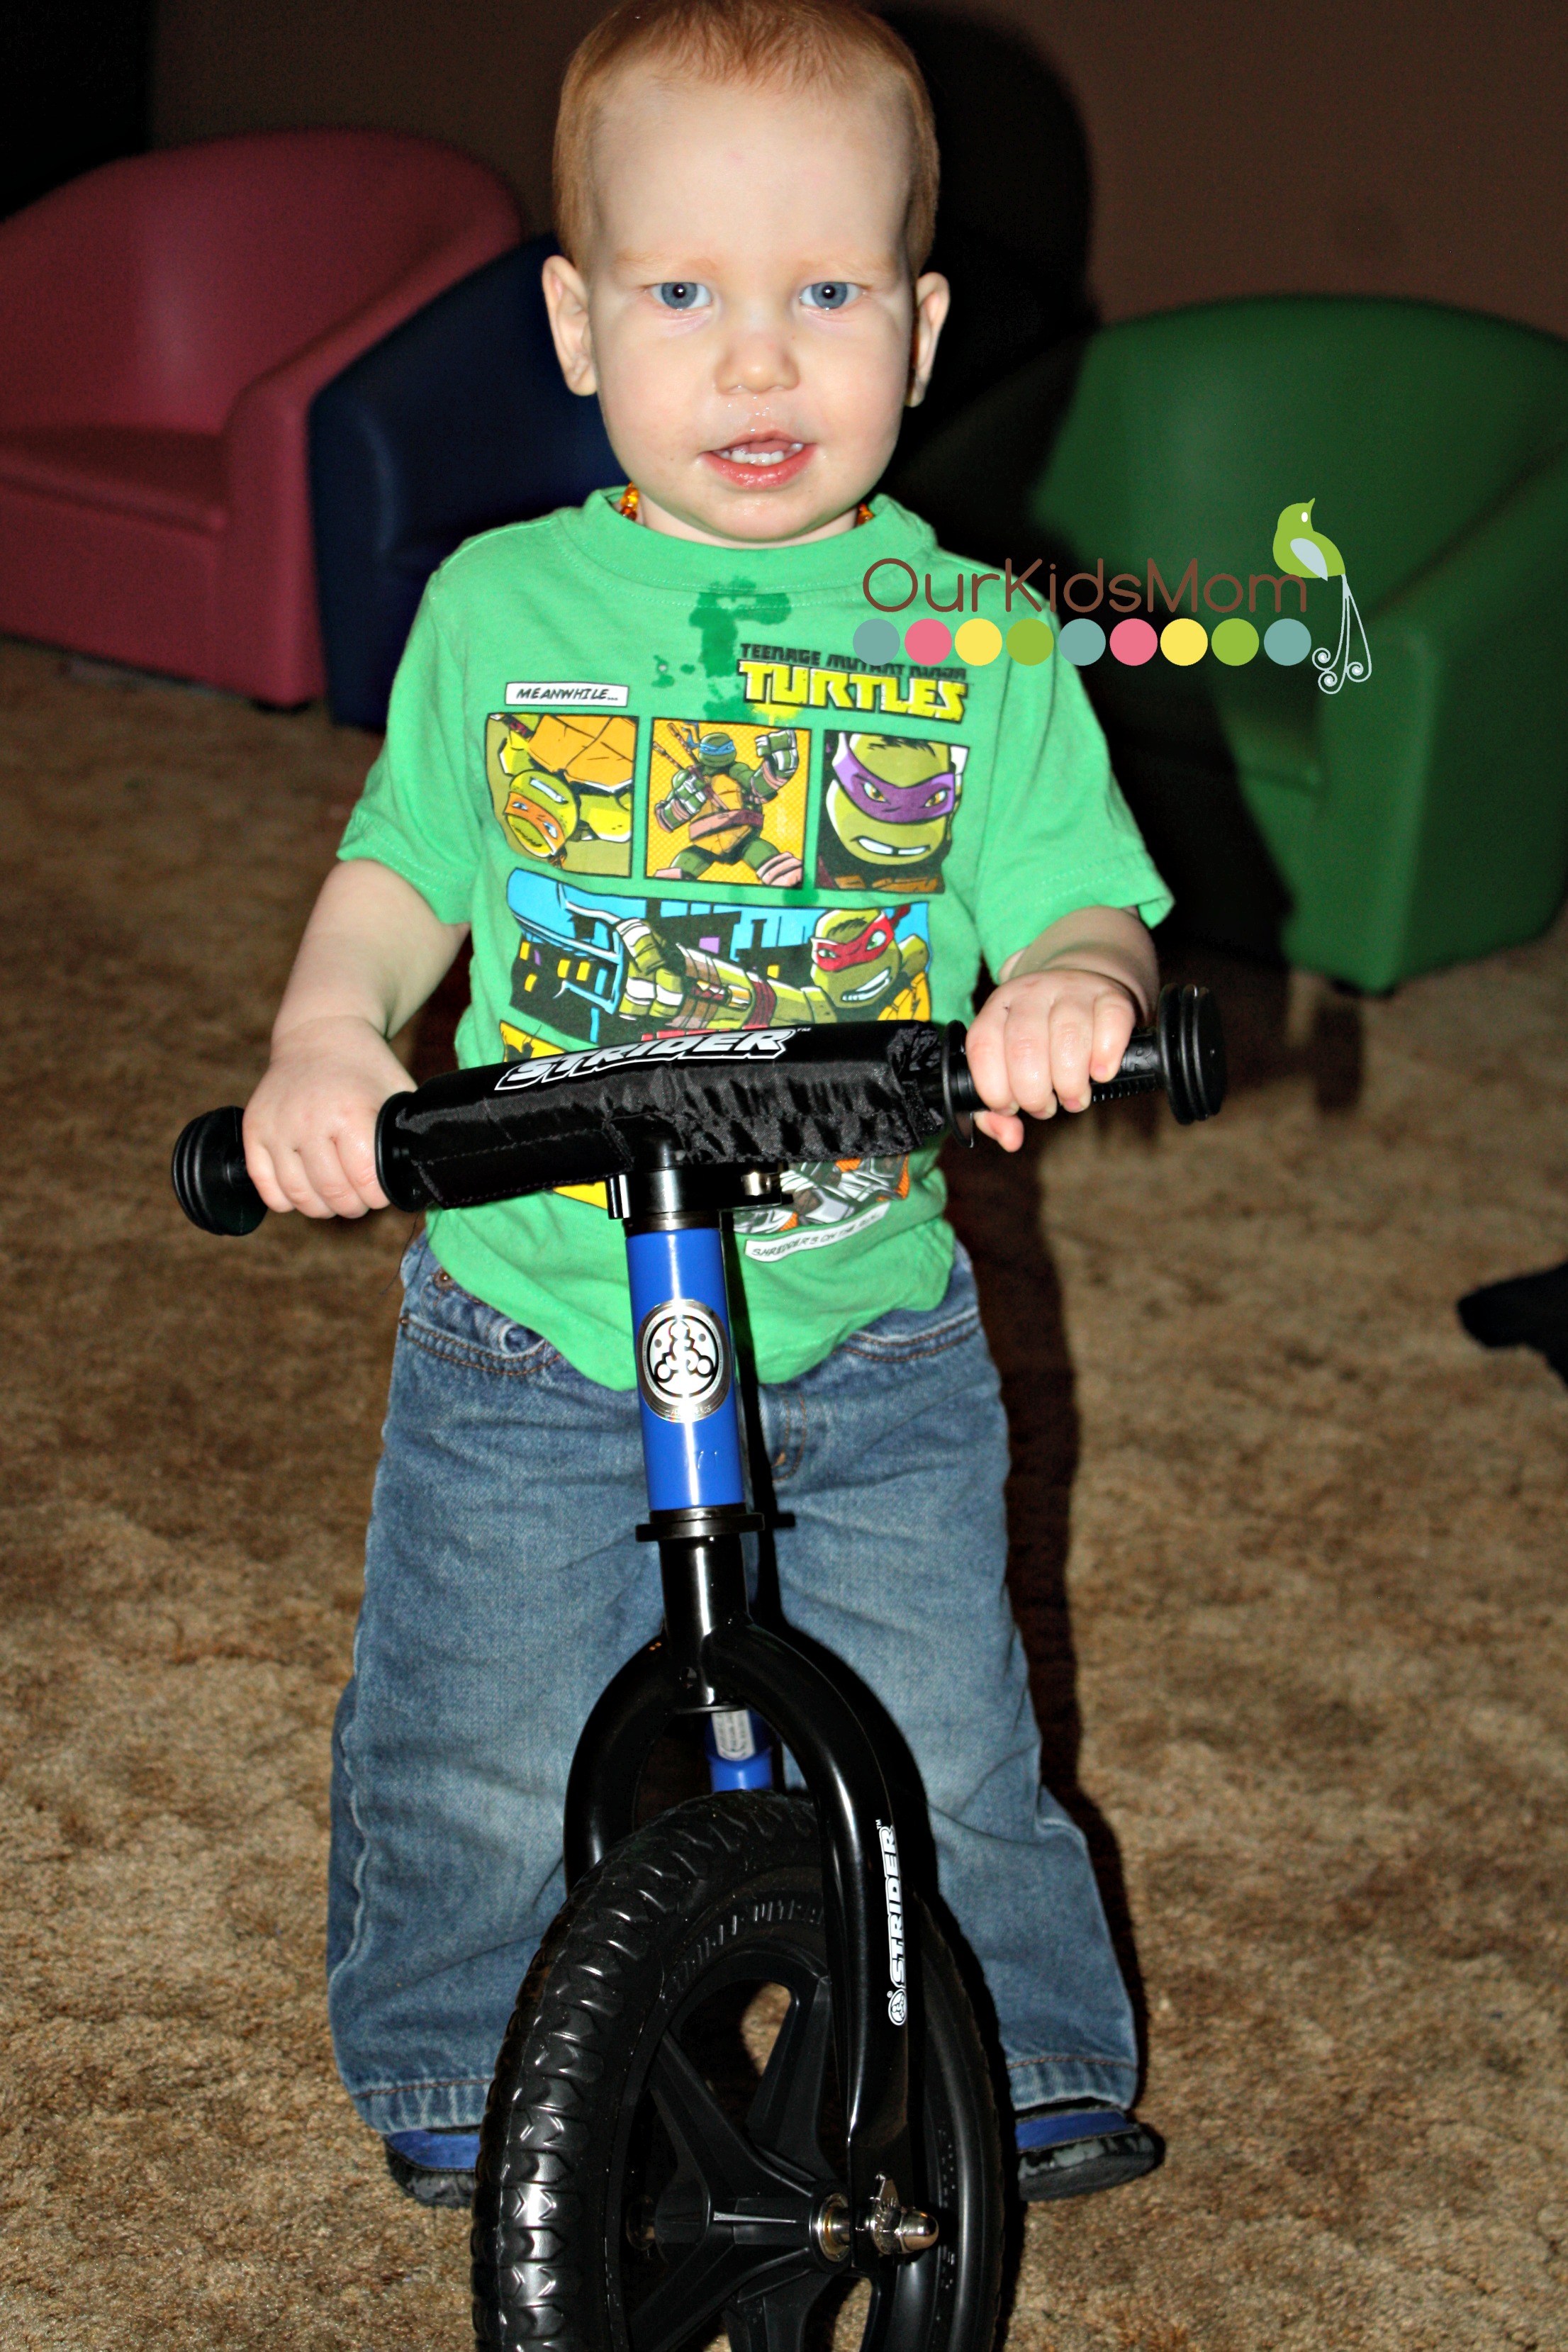 Loves his Bike